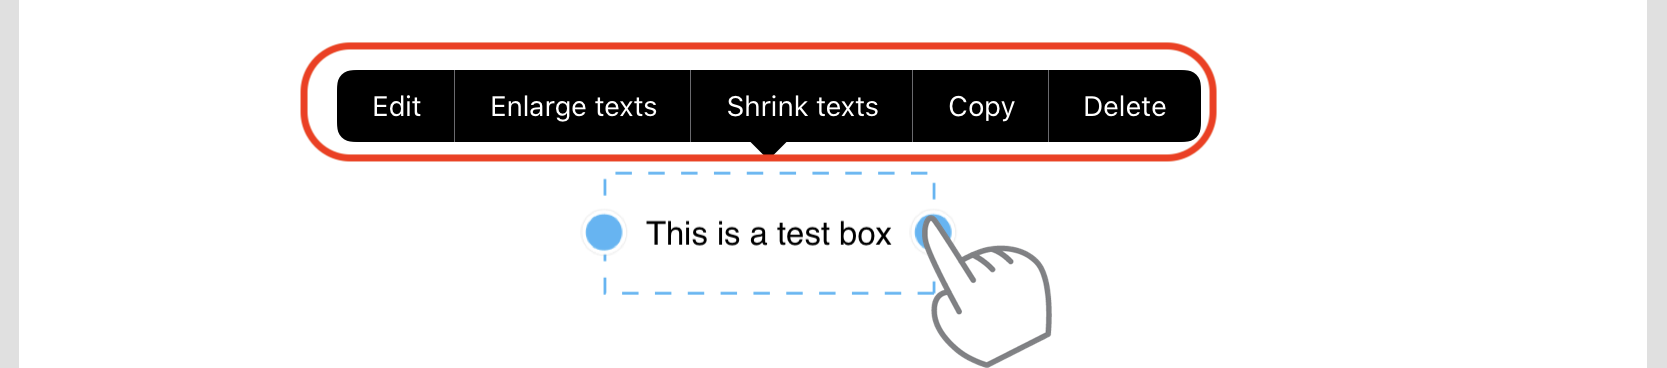 View_PDF_Edit_text_box.PNG